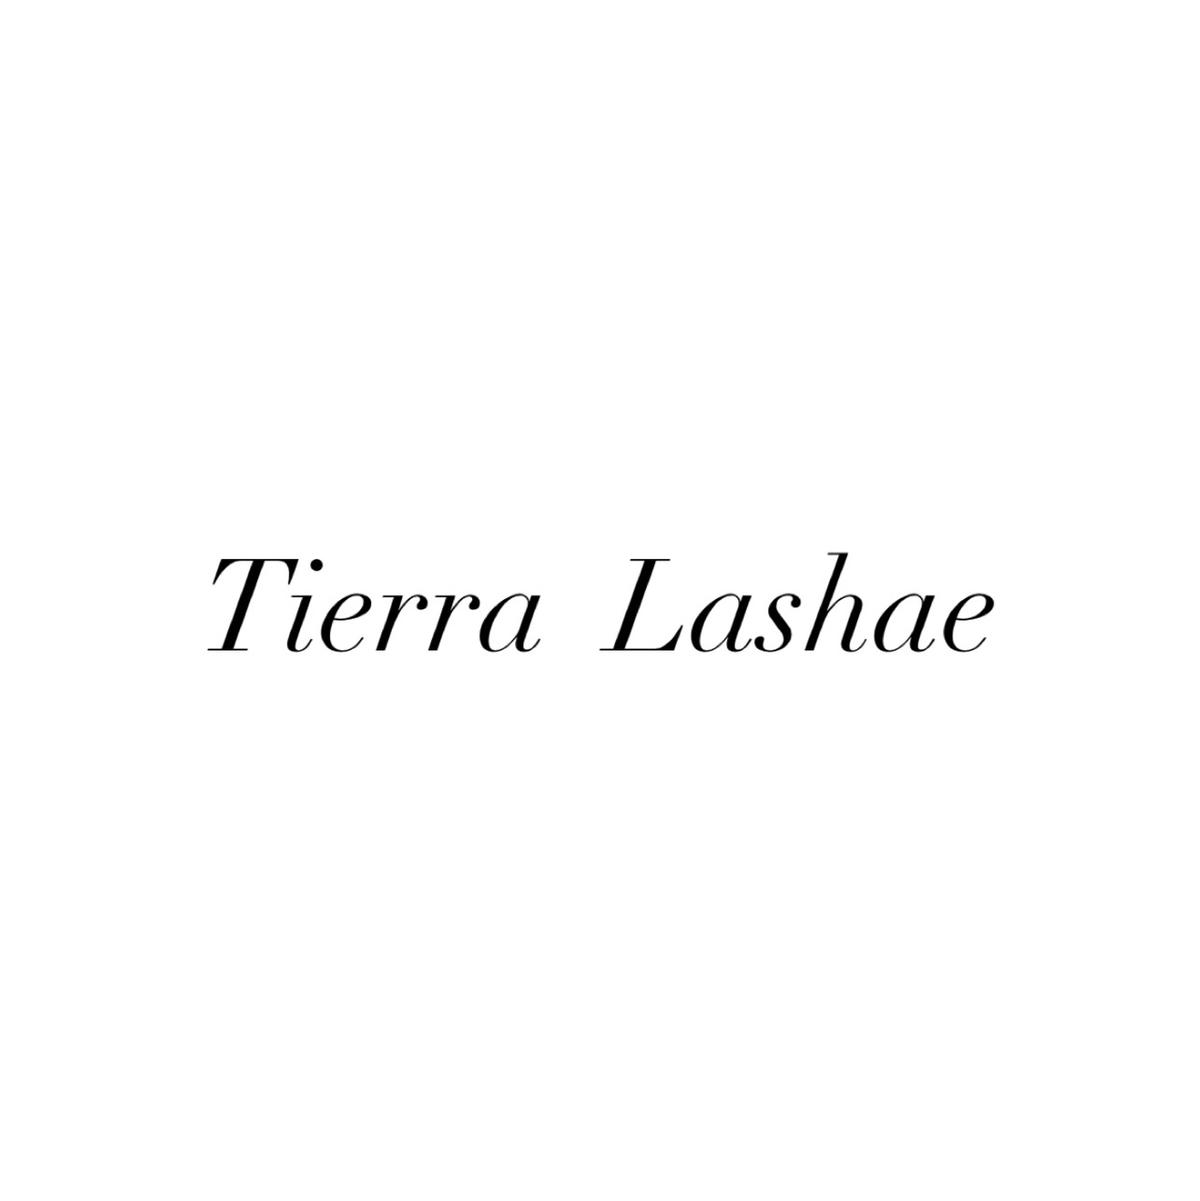 Tierralashae's images